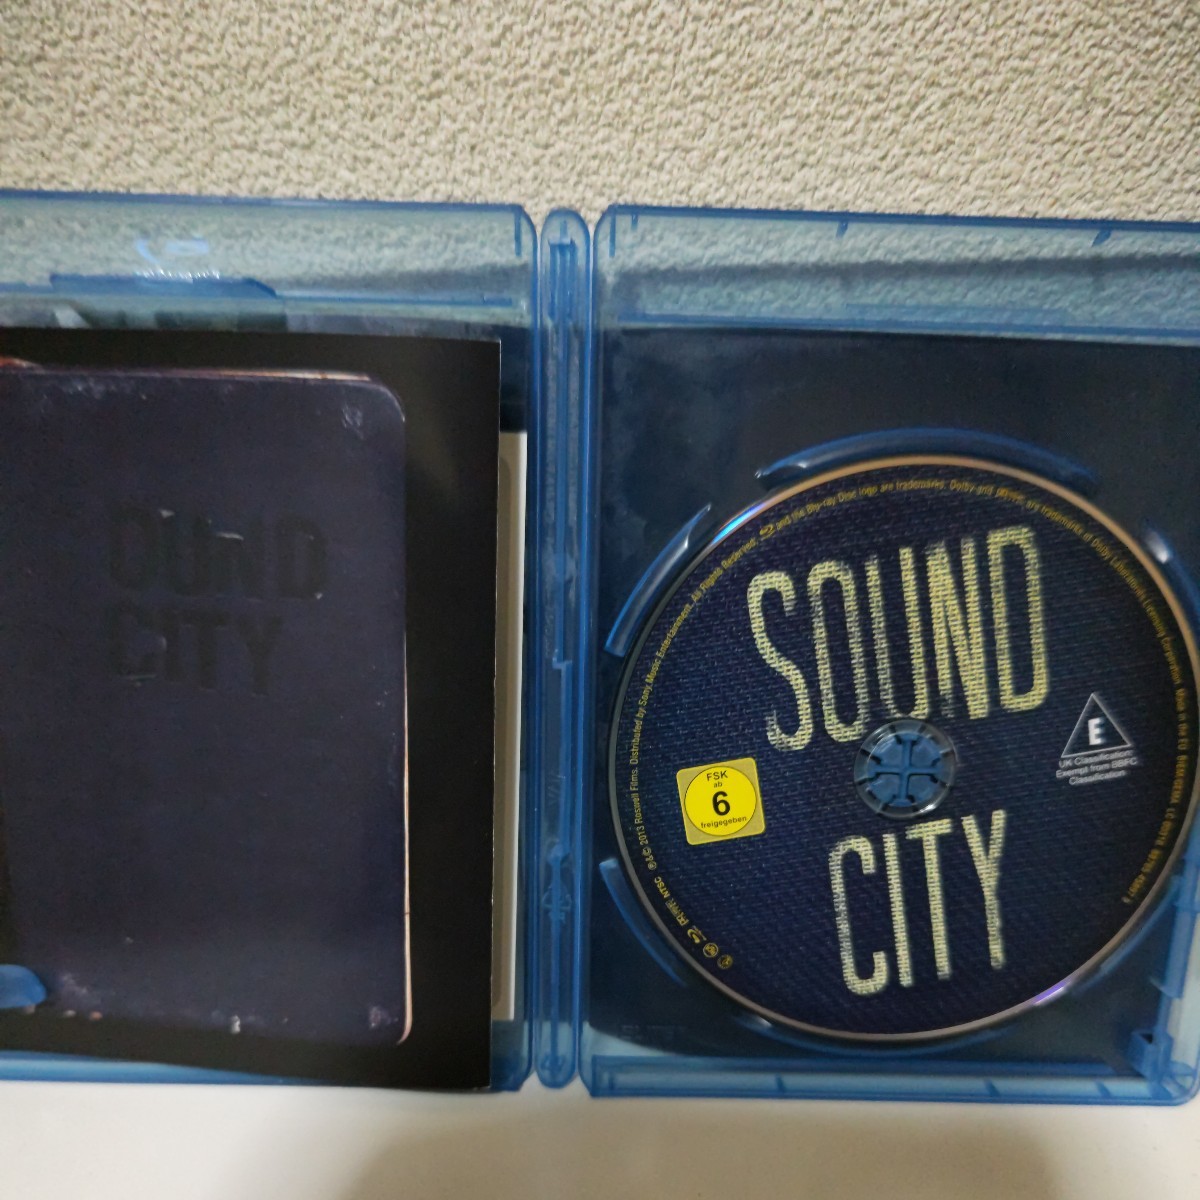 SOUND CITY 輸入盤Blu-ray ニール・ヤング トム・ペティ スティービー・ニックス リック・スプリングフィールド バリー・マニロウetc_画像4